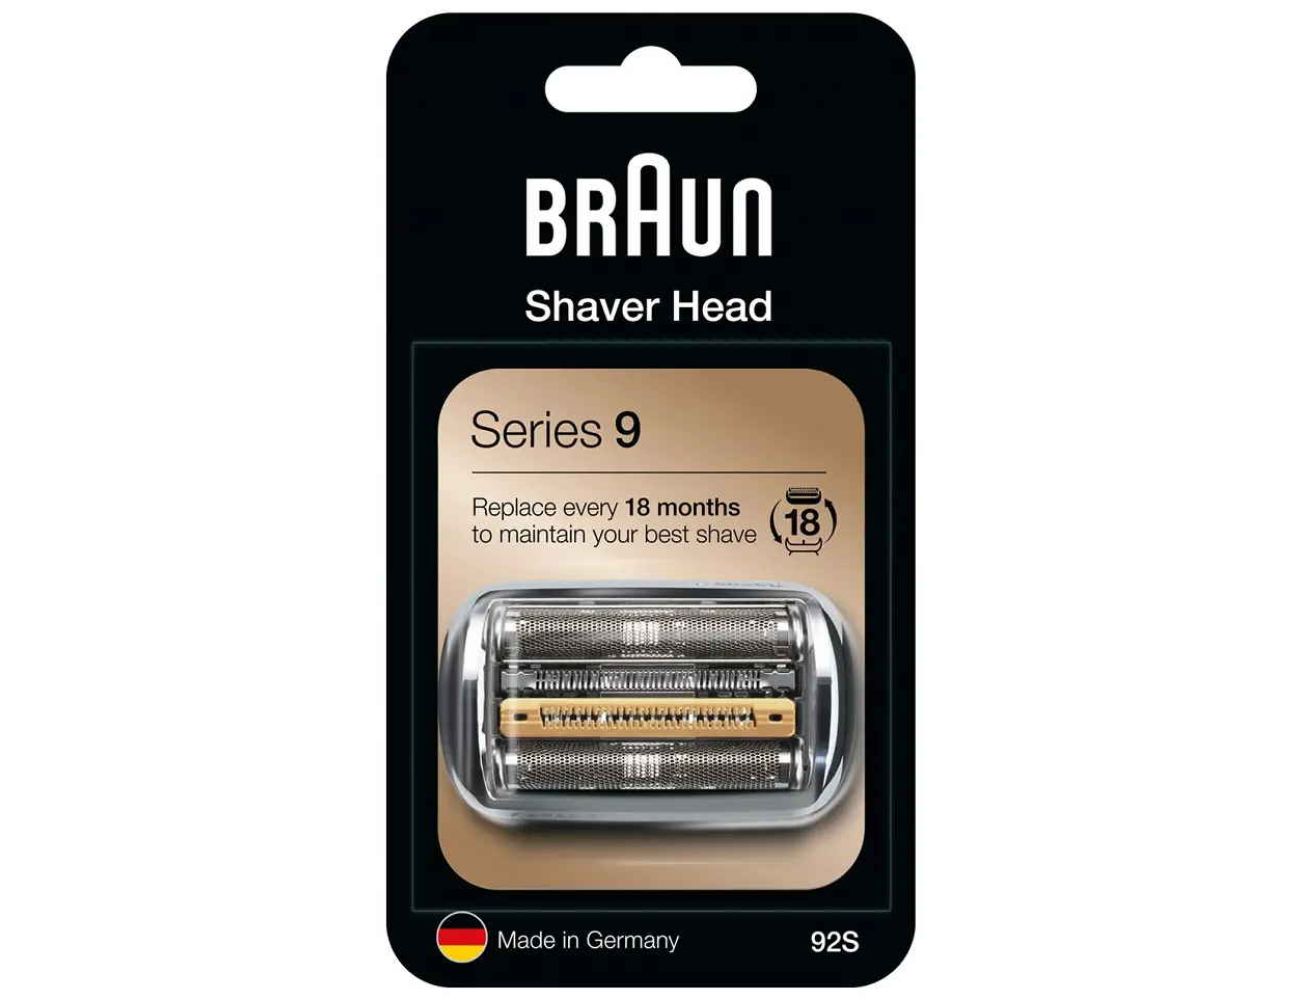 Сетка Braun 92S Series 9 сетки и нож (кассета) серебристый